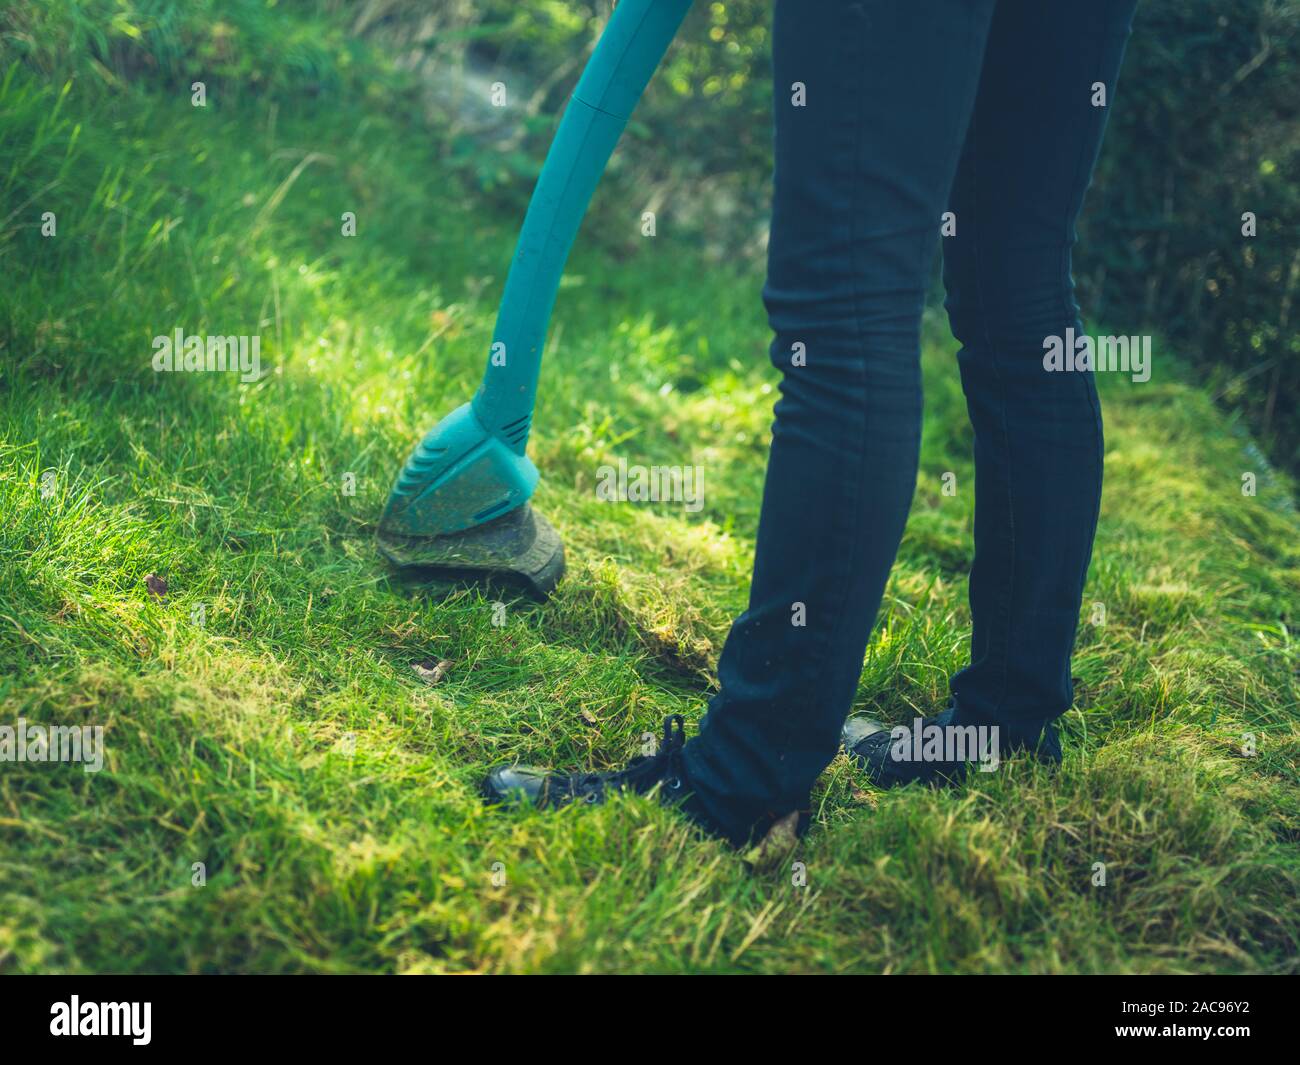 Una mujer joven está cortando el césped utilizando una hierba strimmer Foto de stock